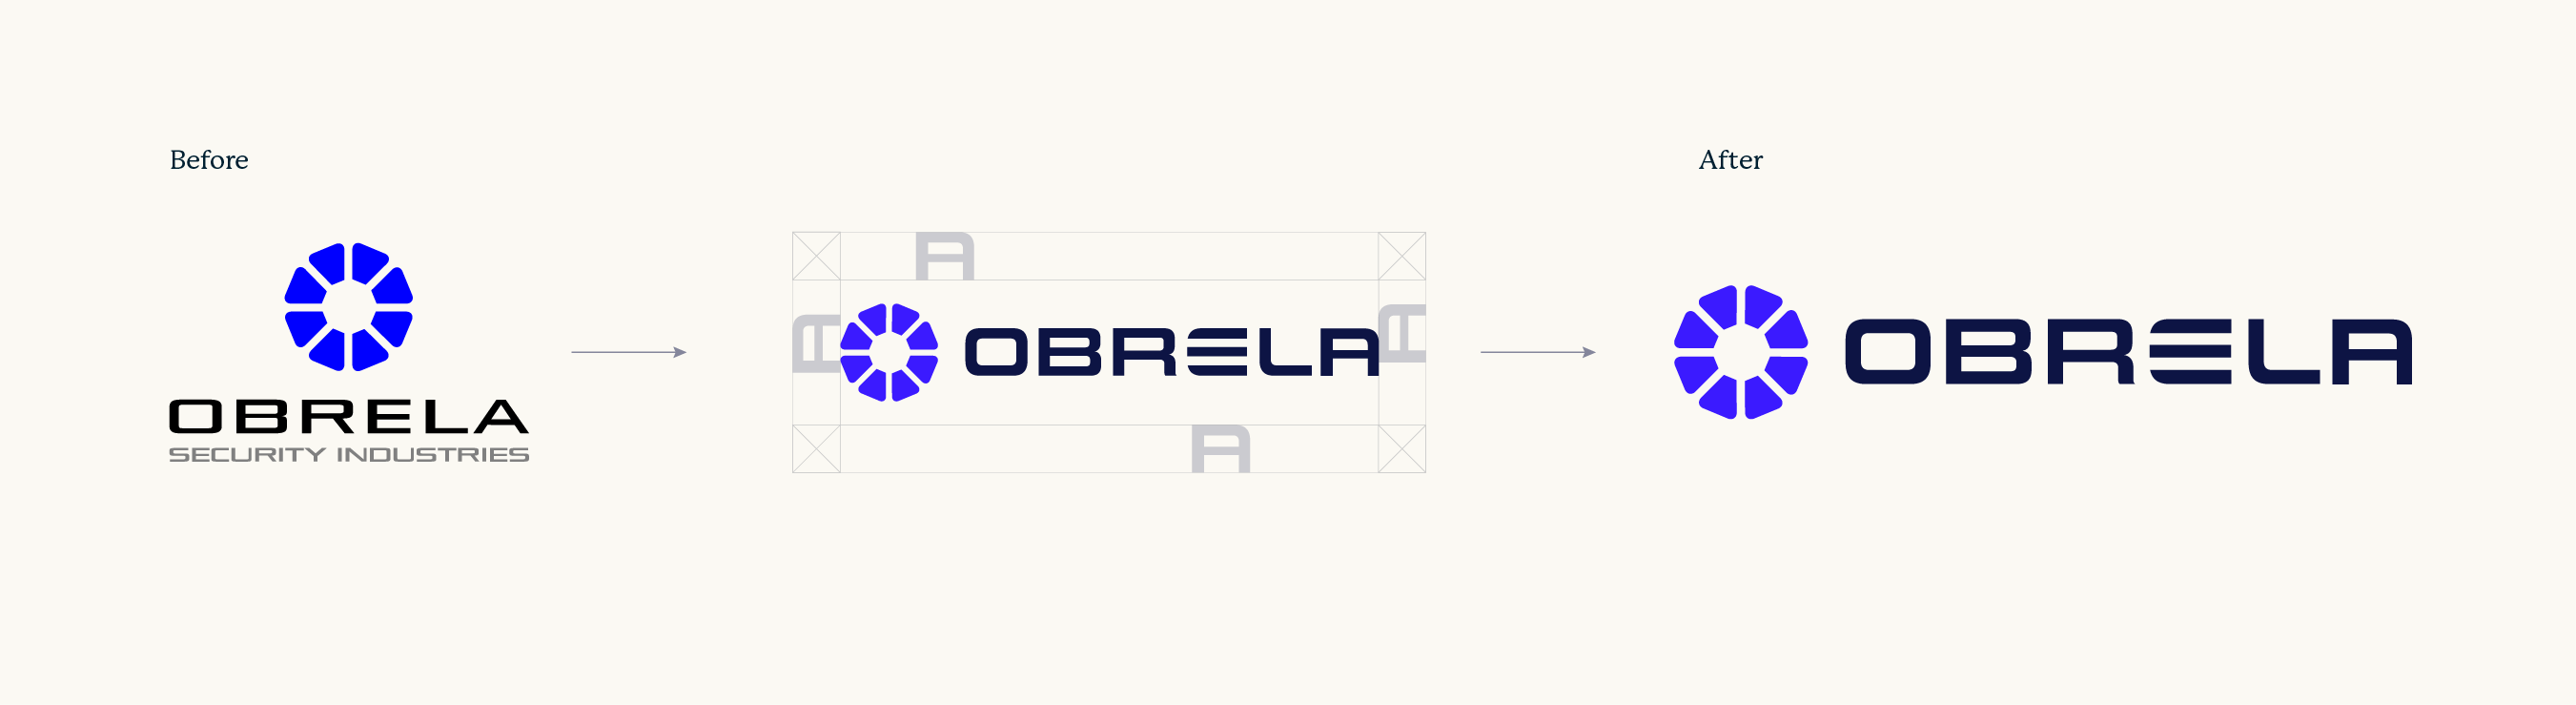 Obrela-Final-Logo